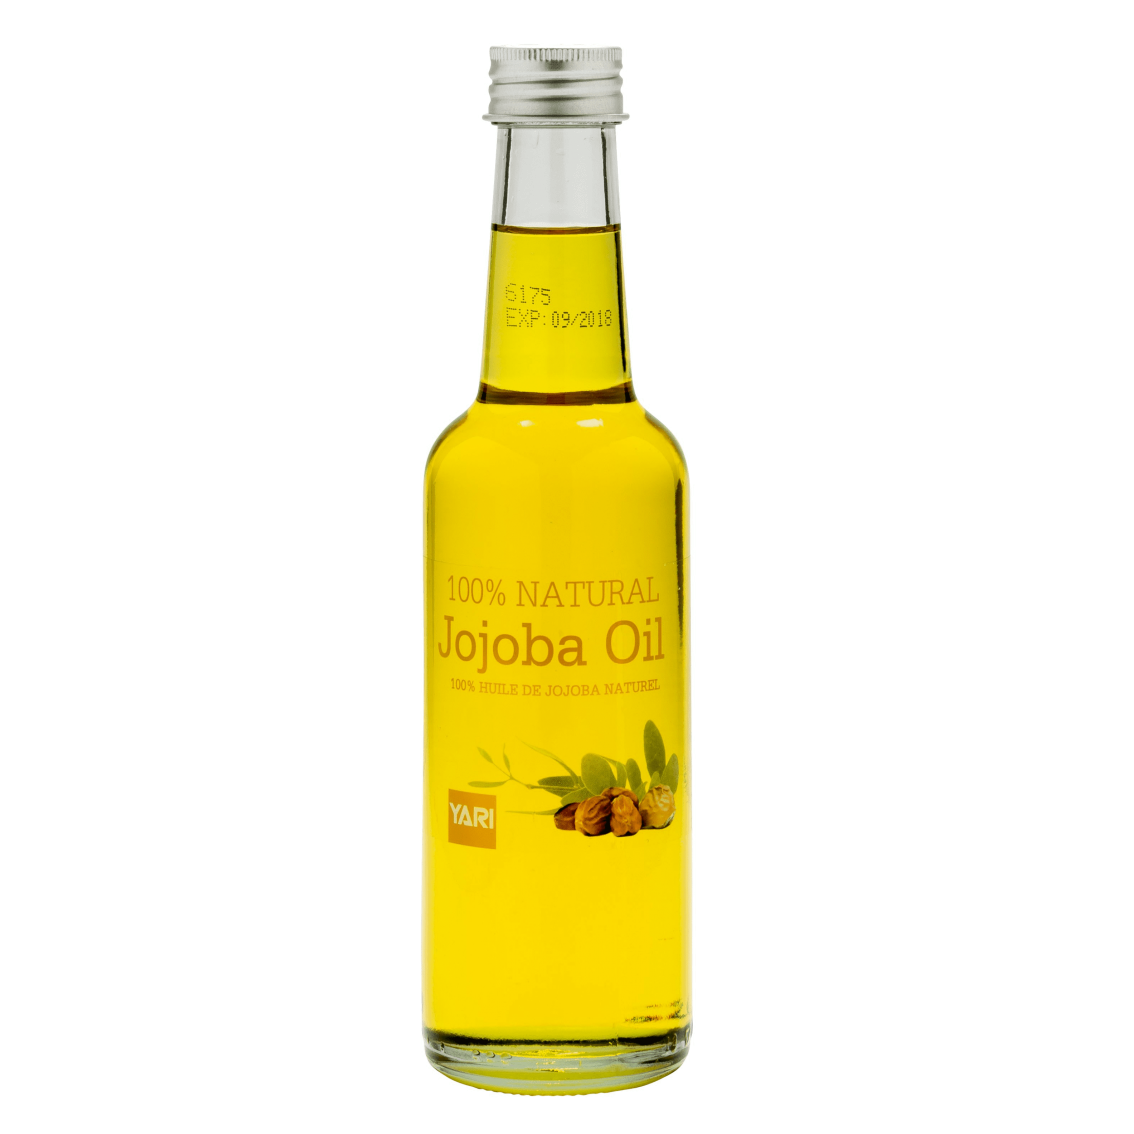 Yari 100% olio jojoba naturale 250ml